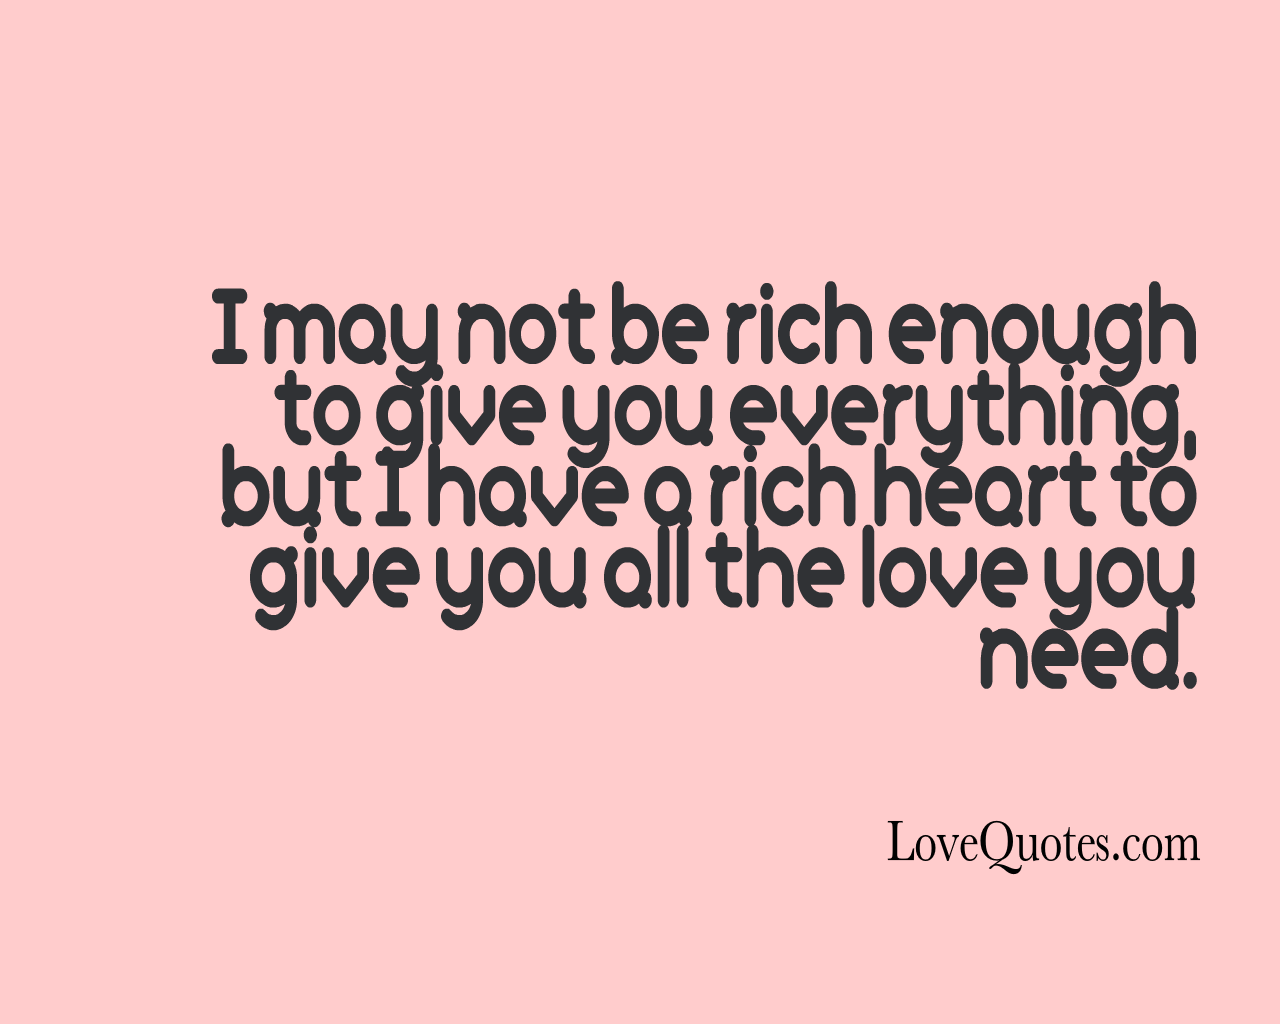 A Rich heart